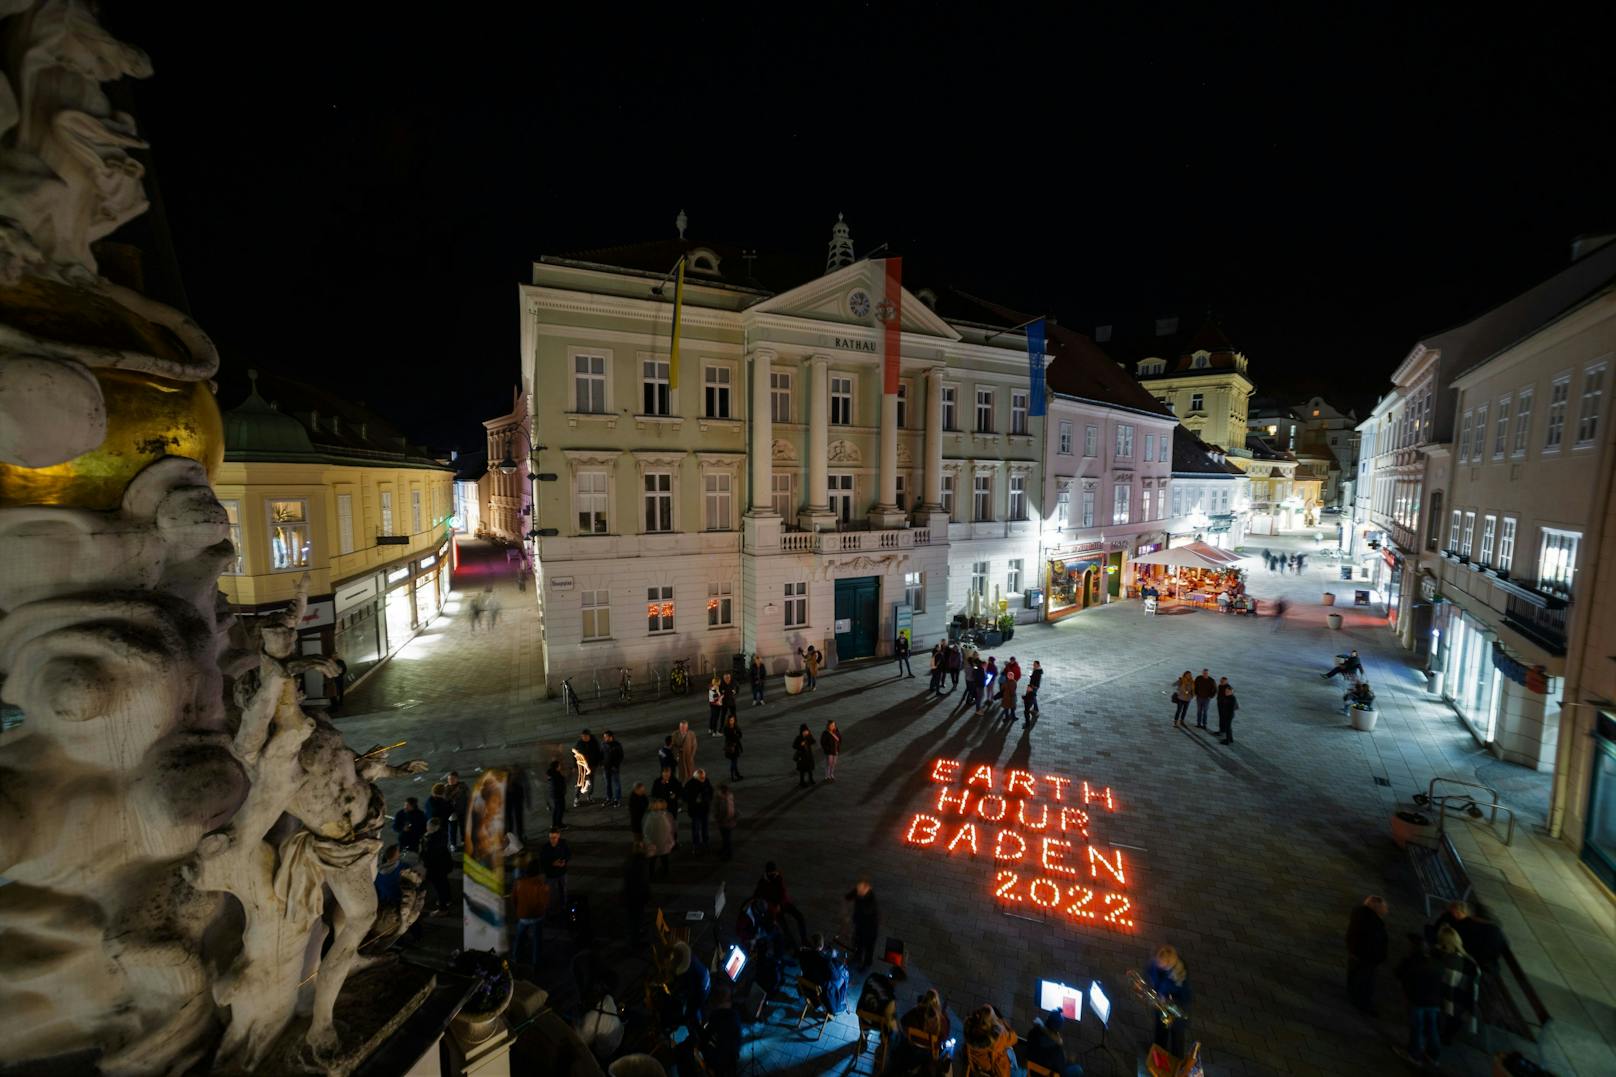 Earth Hour in Baden